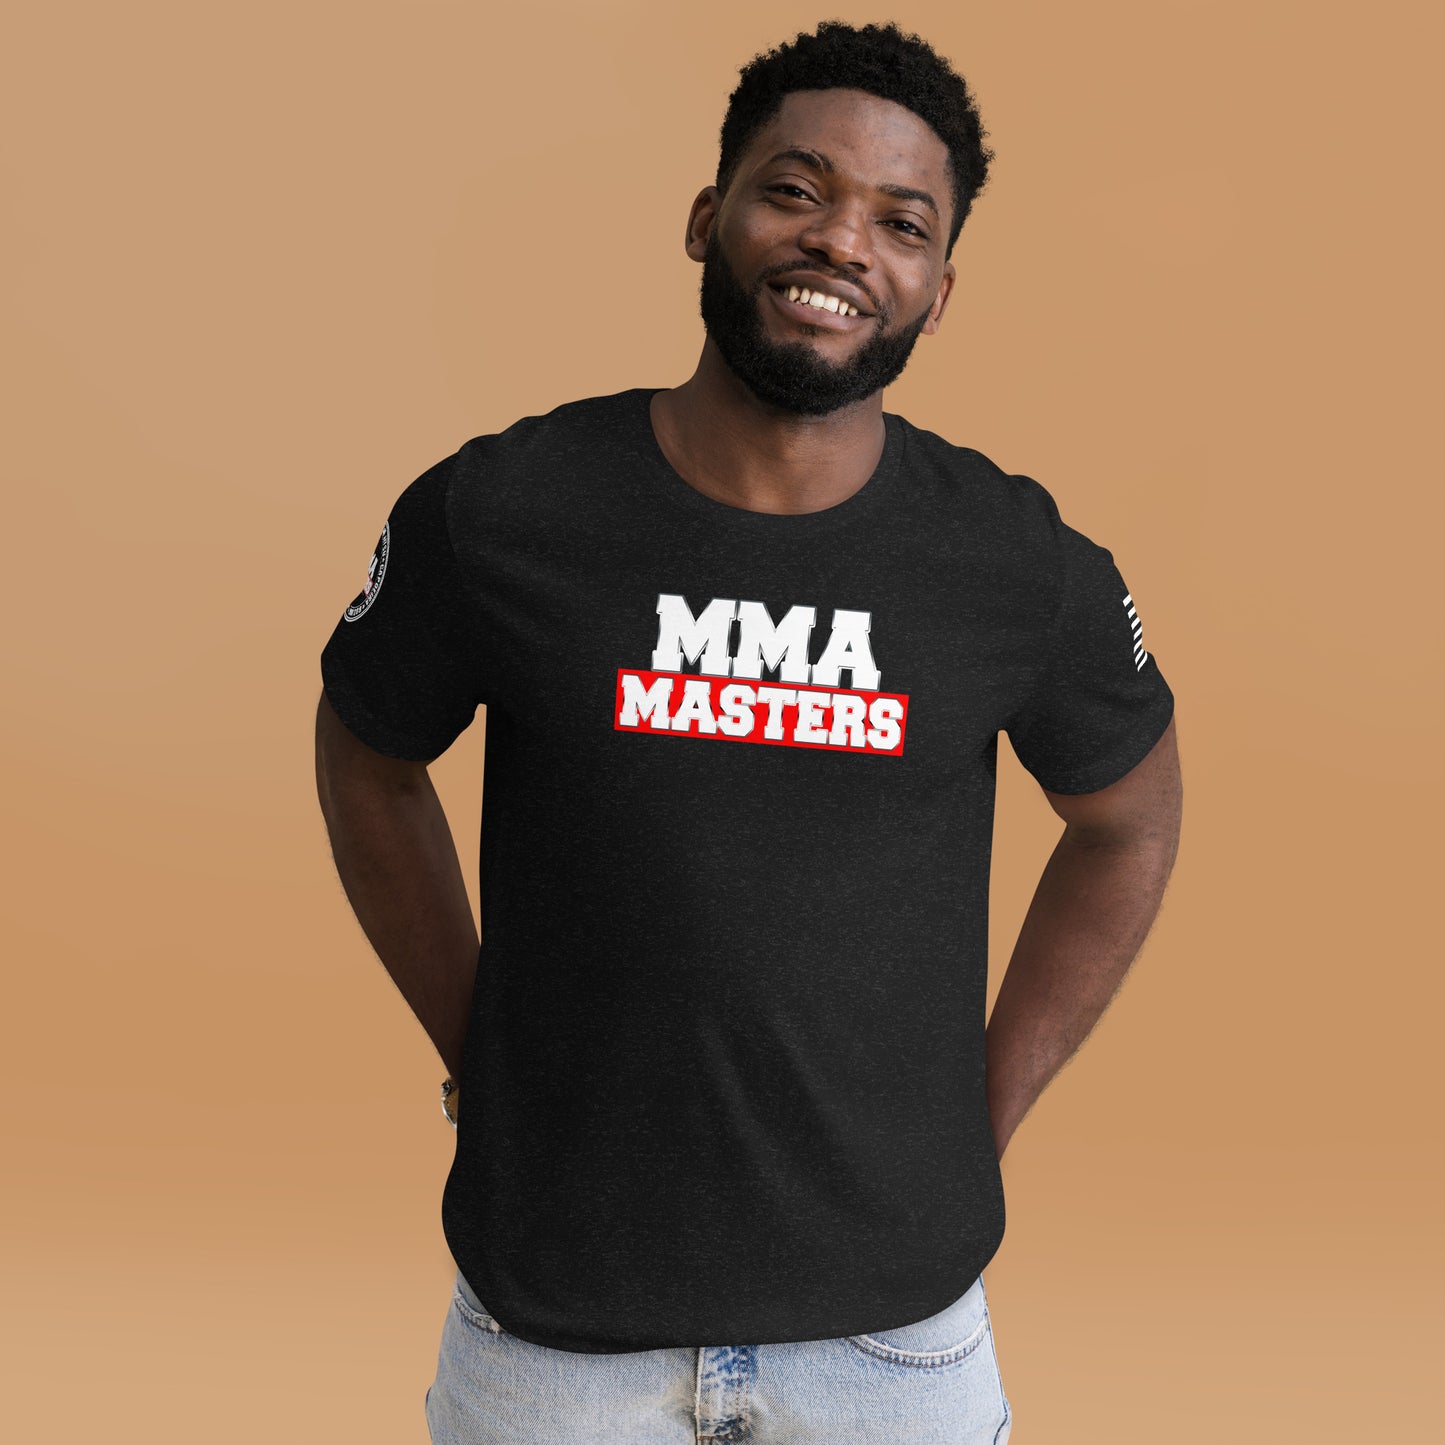 MMA MASTERS TEES